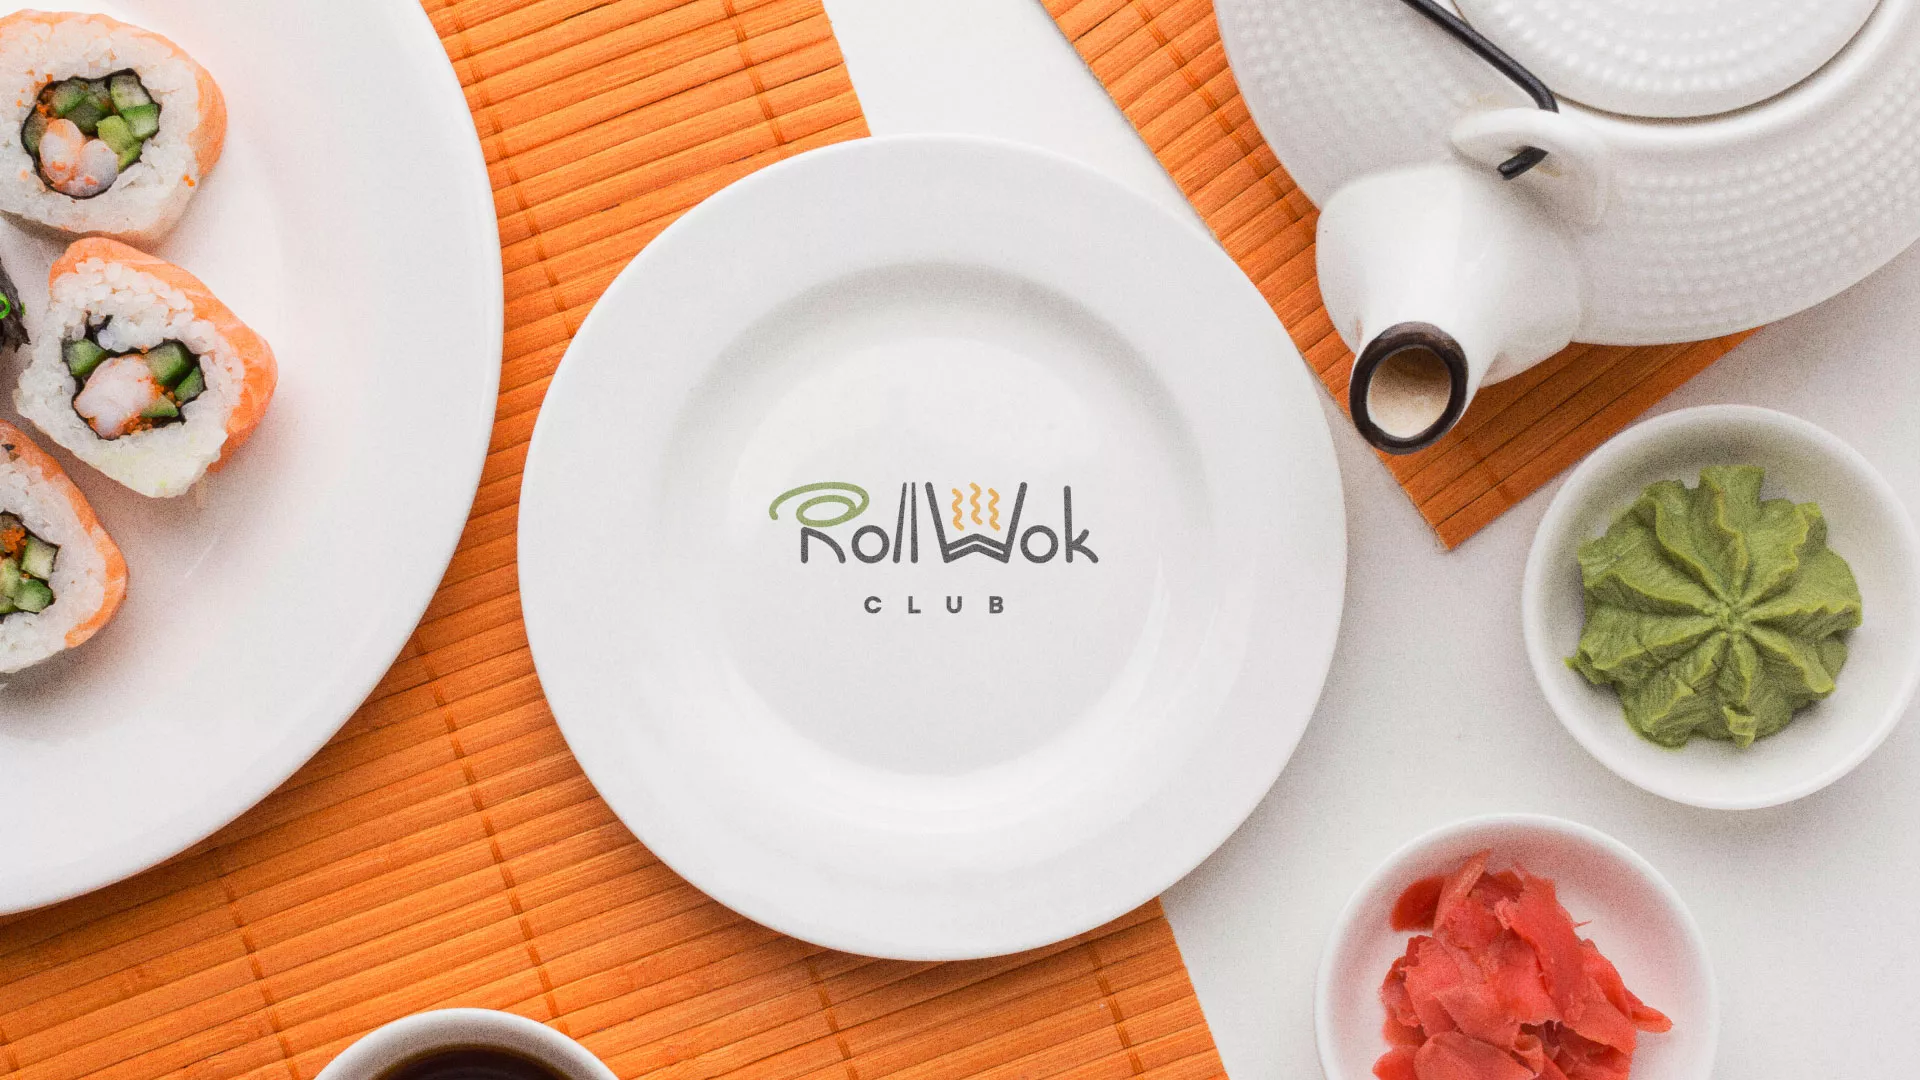 Разработка логотипа и фирменного стиля суши-бара «Roll Wok Club» в Козельске